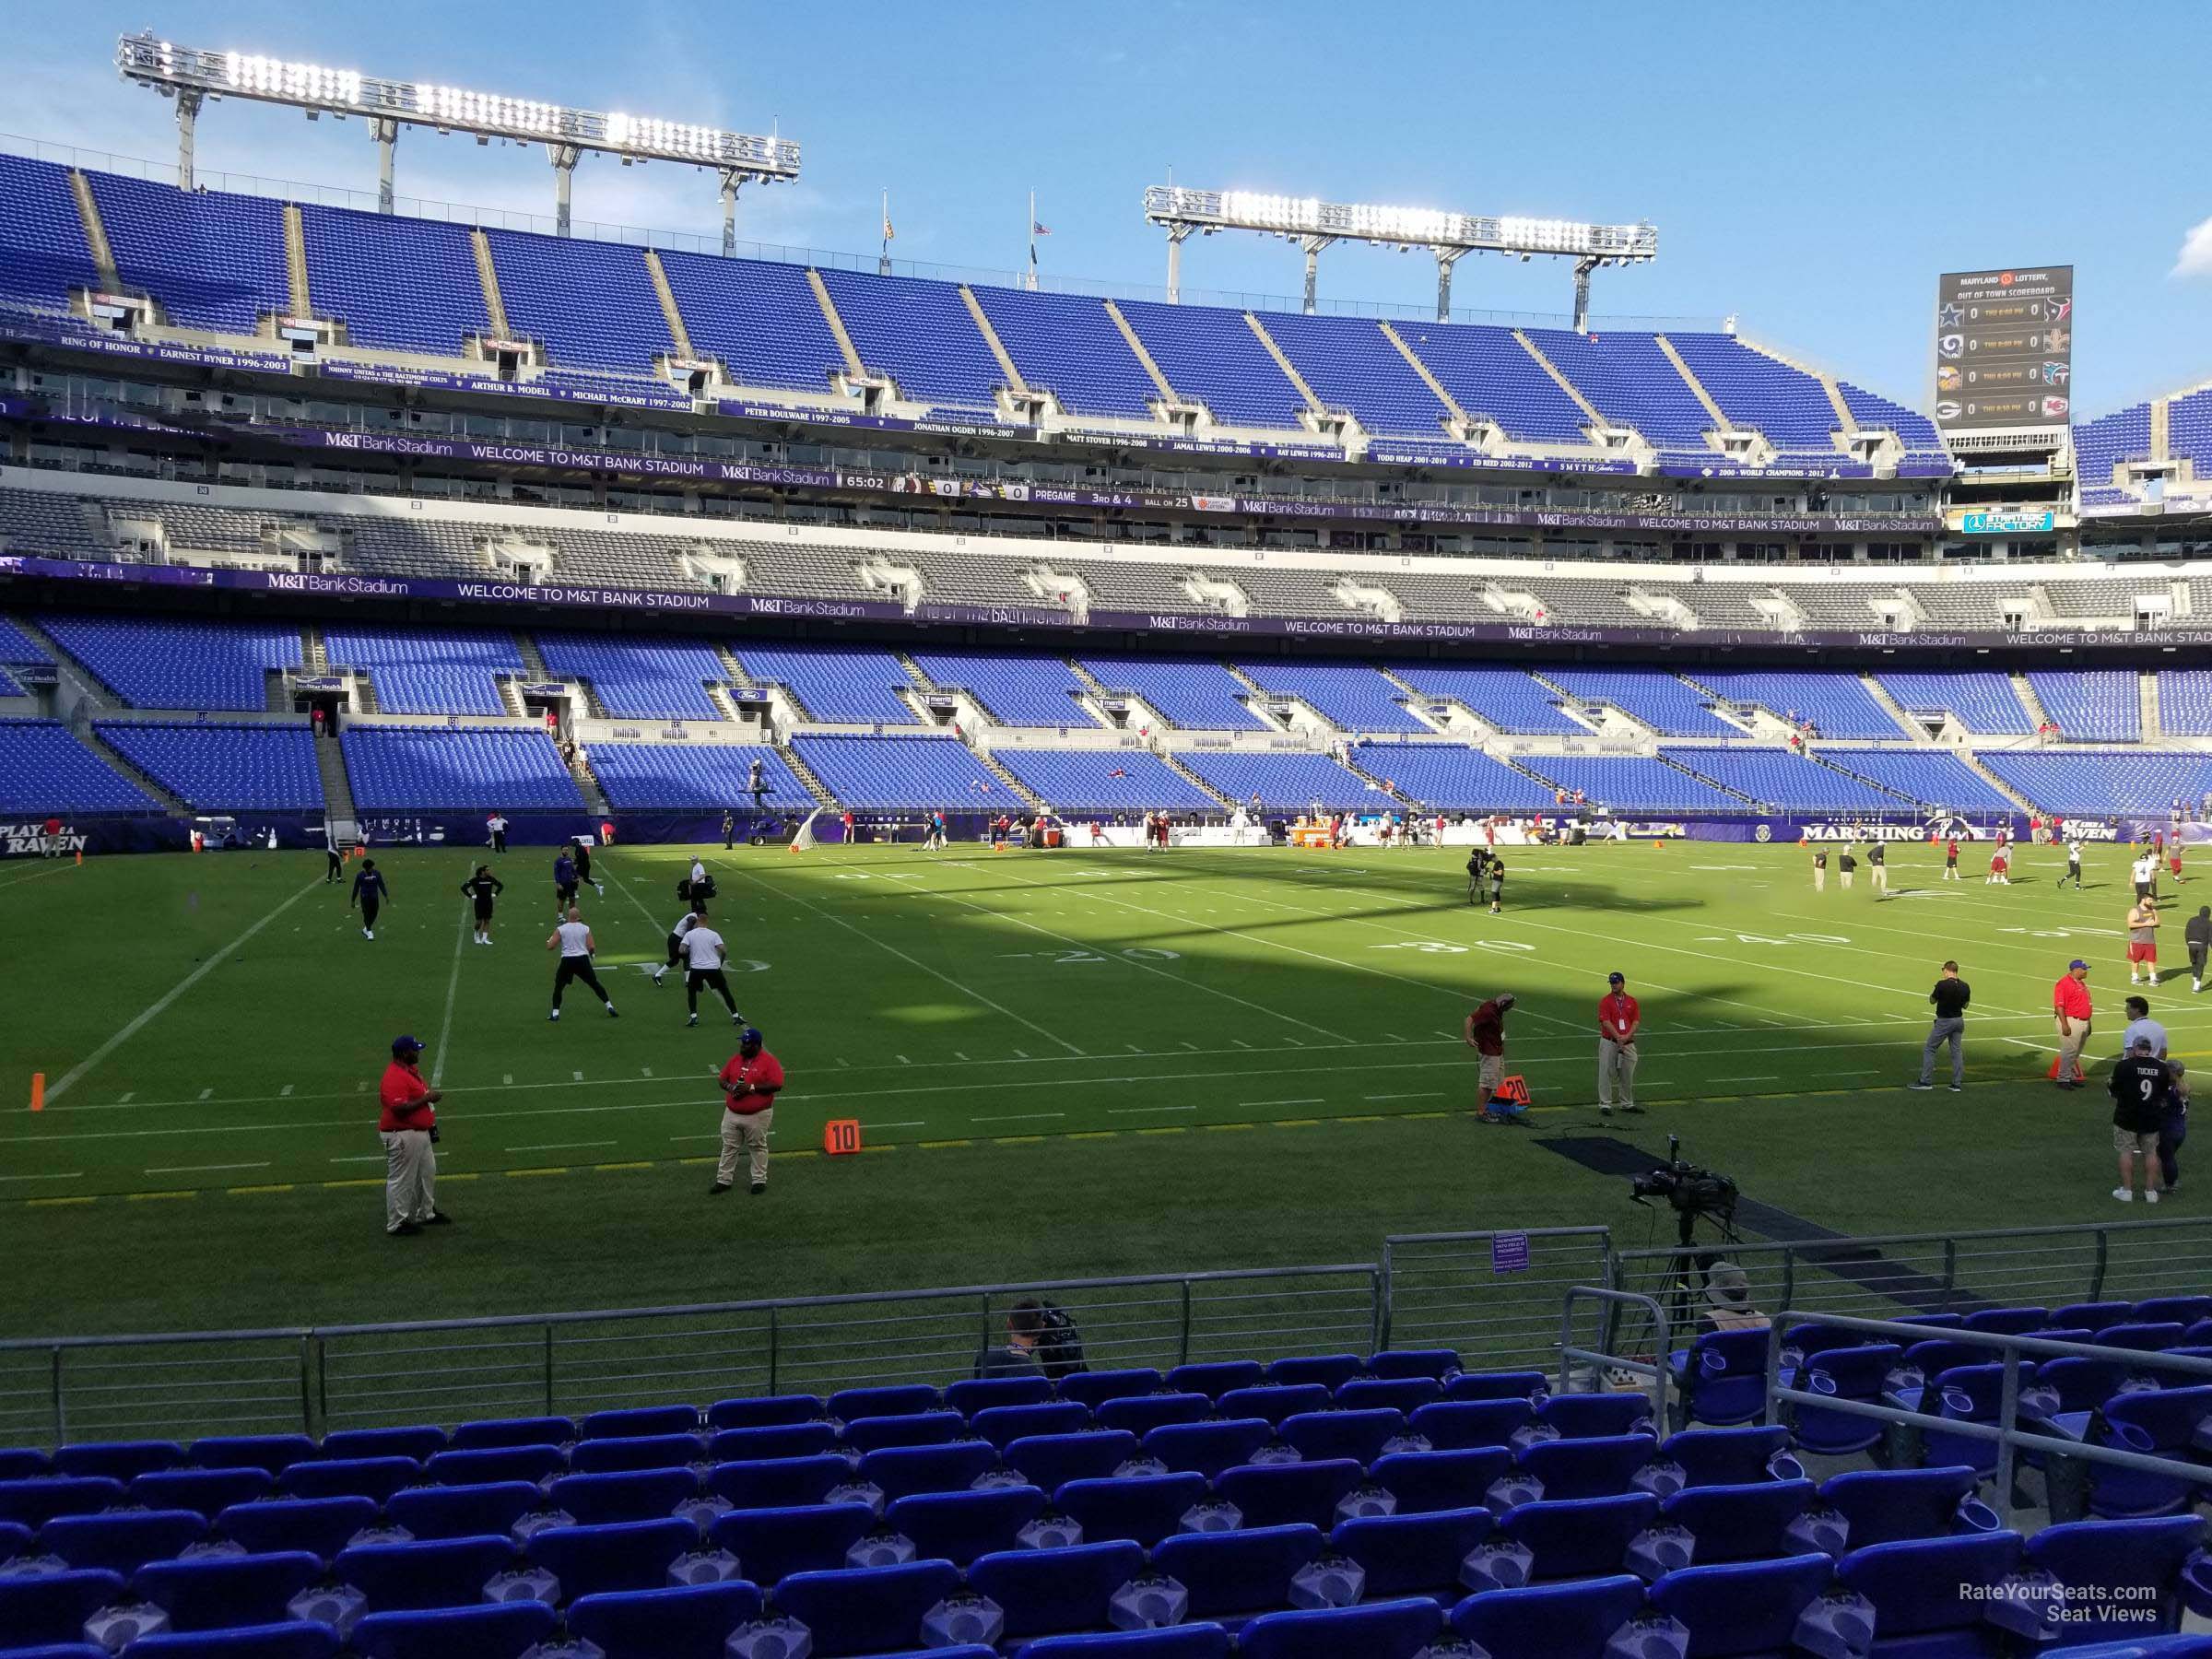 Section 130 At Mandt Bank Stadium Baltimore Ravens